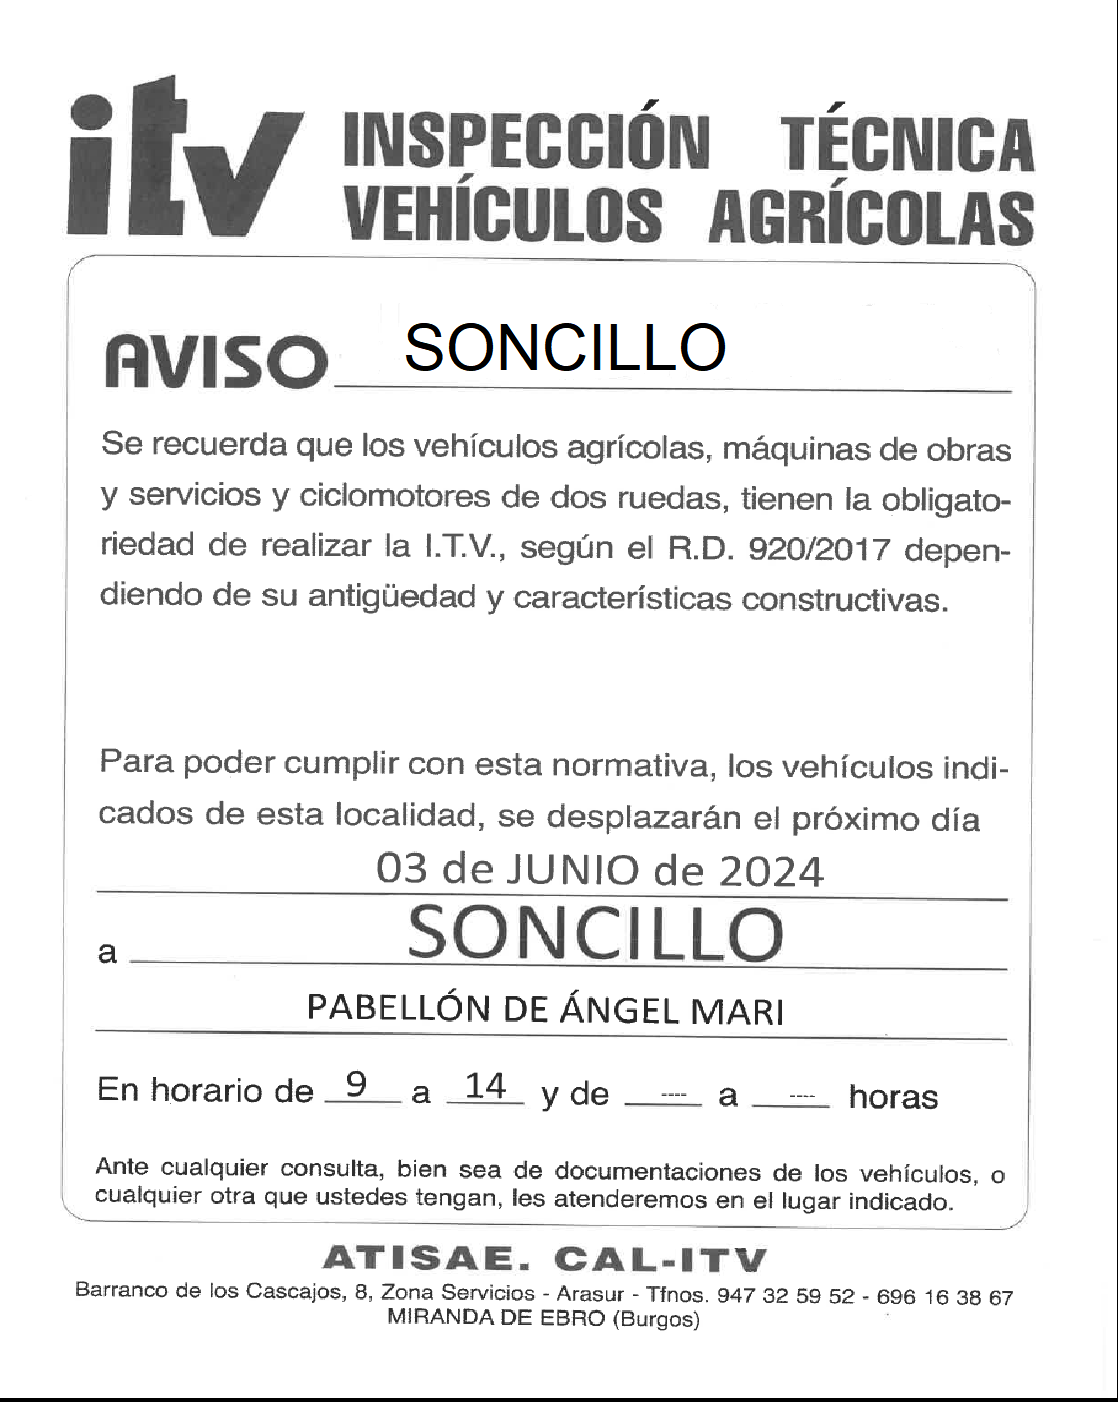 "I.T.V. SONCILLO"